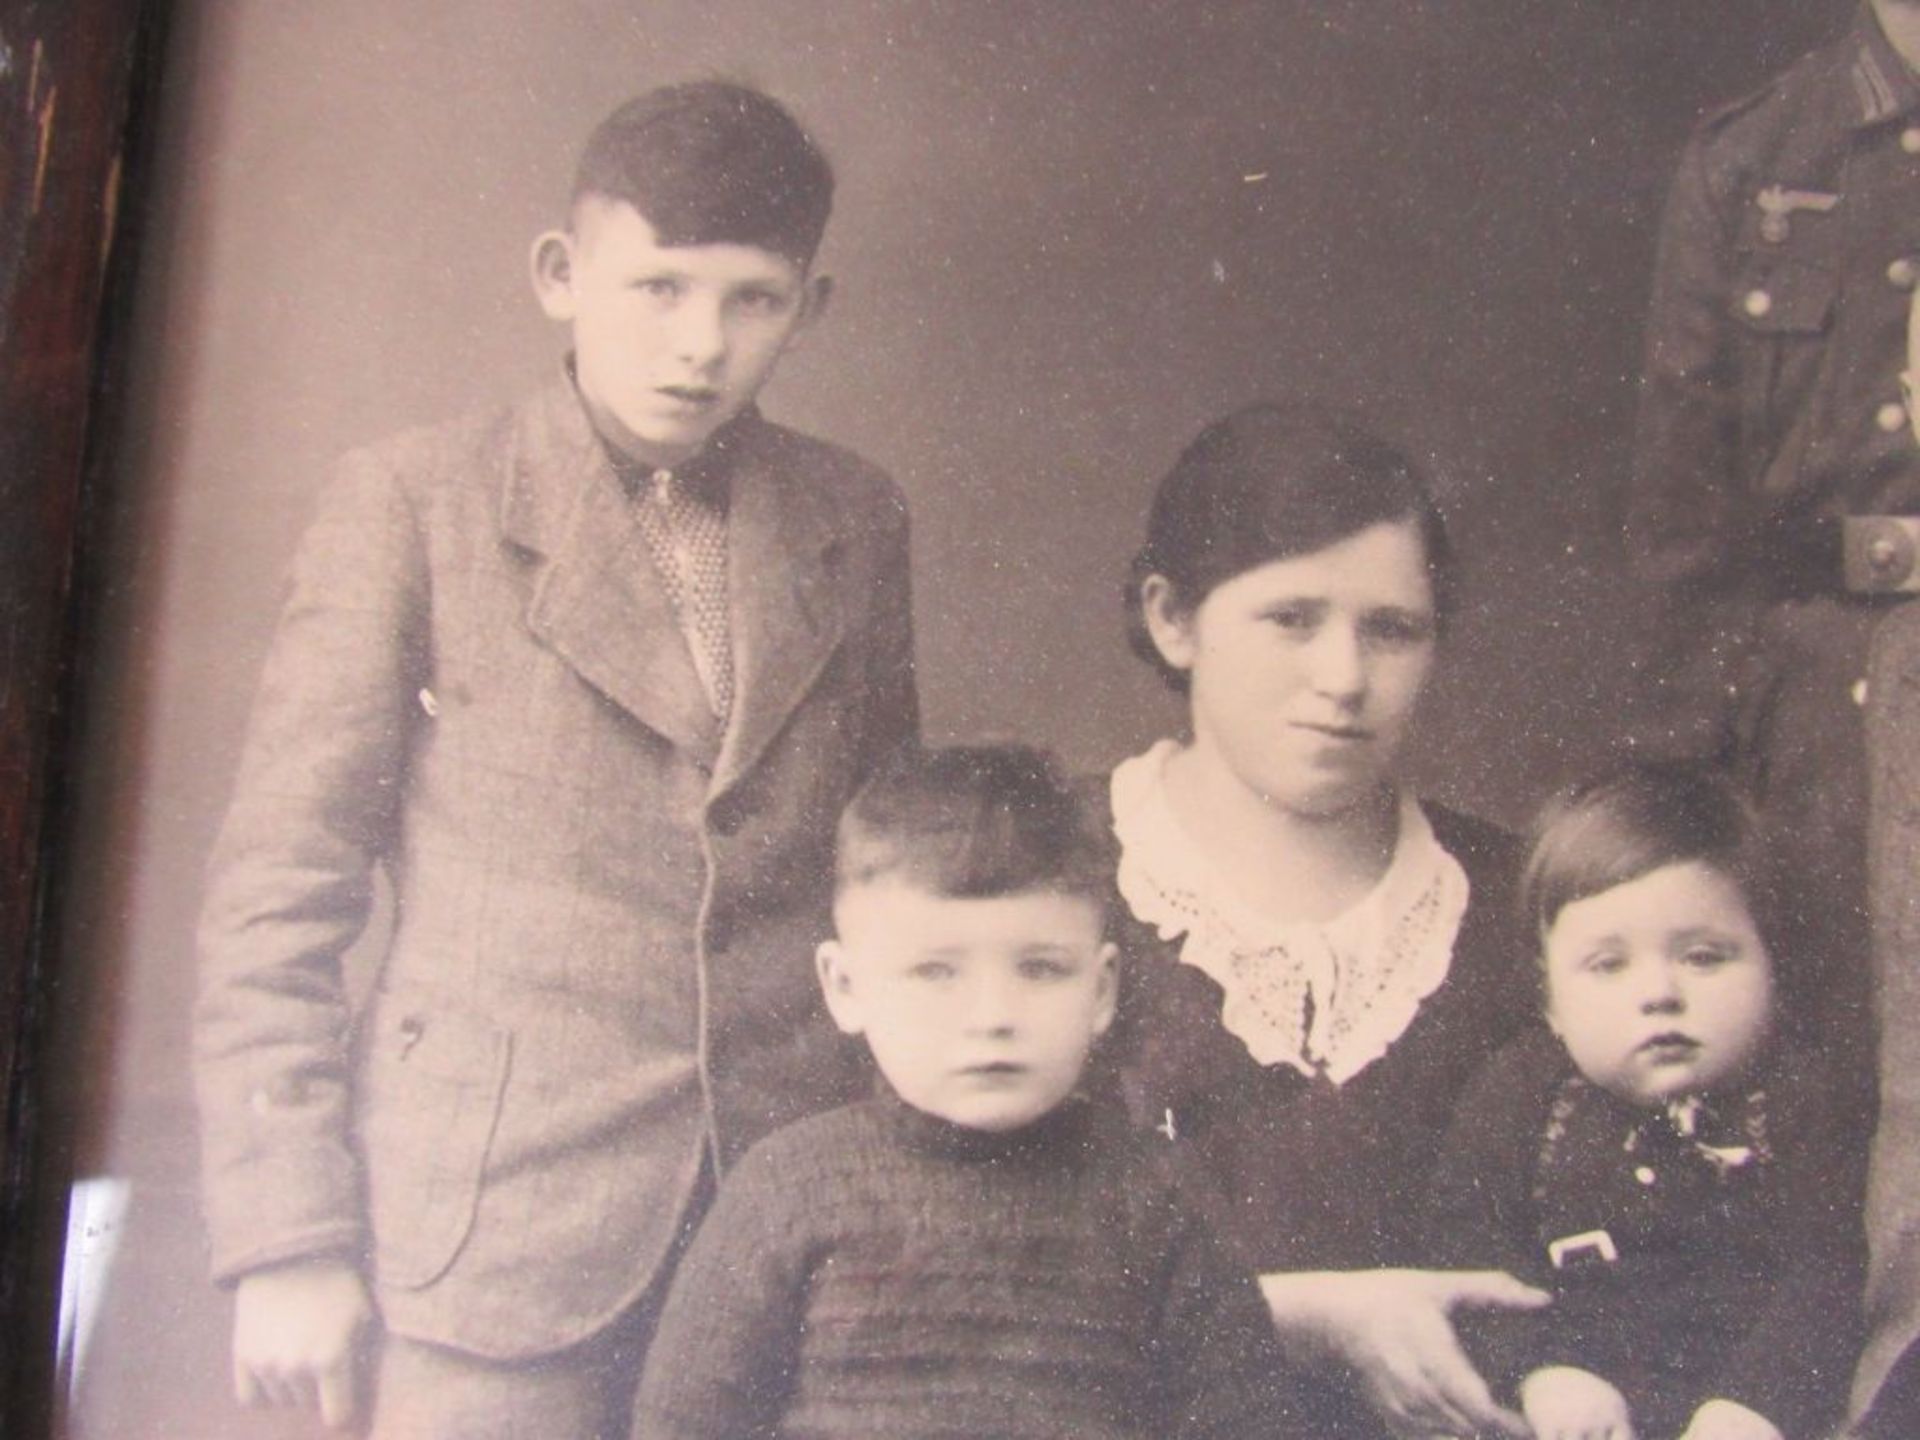 3. Reich Familienfoto eines Gefreiten - Image 3 of 6